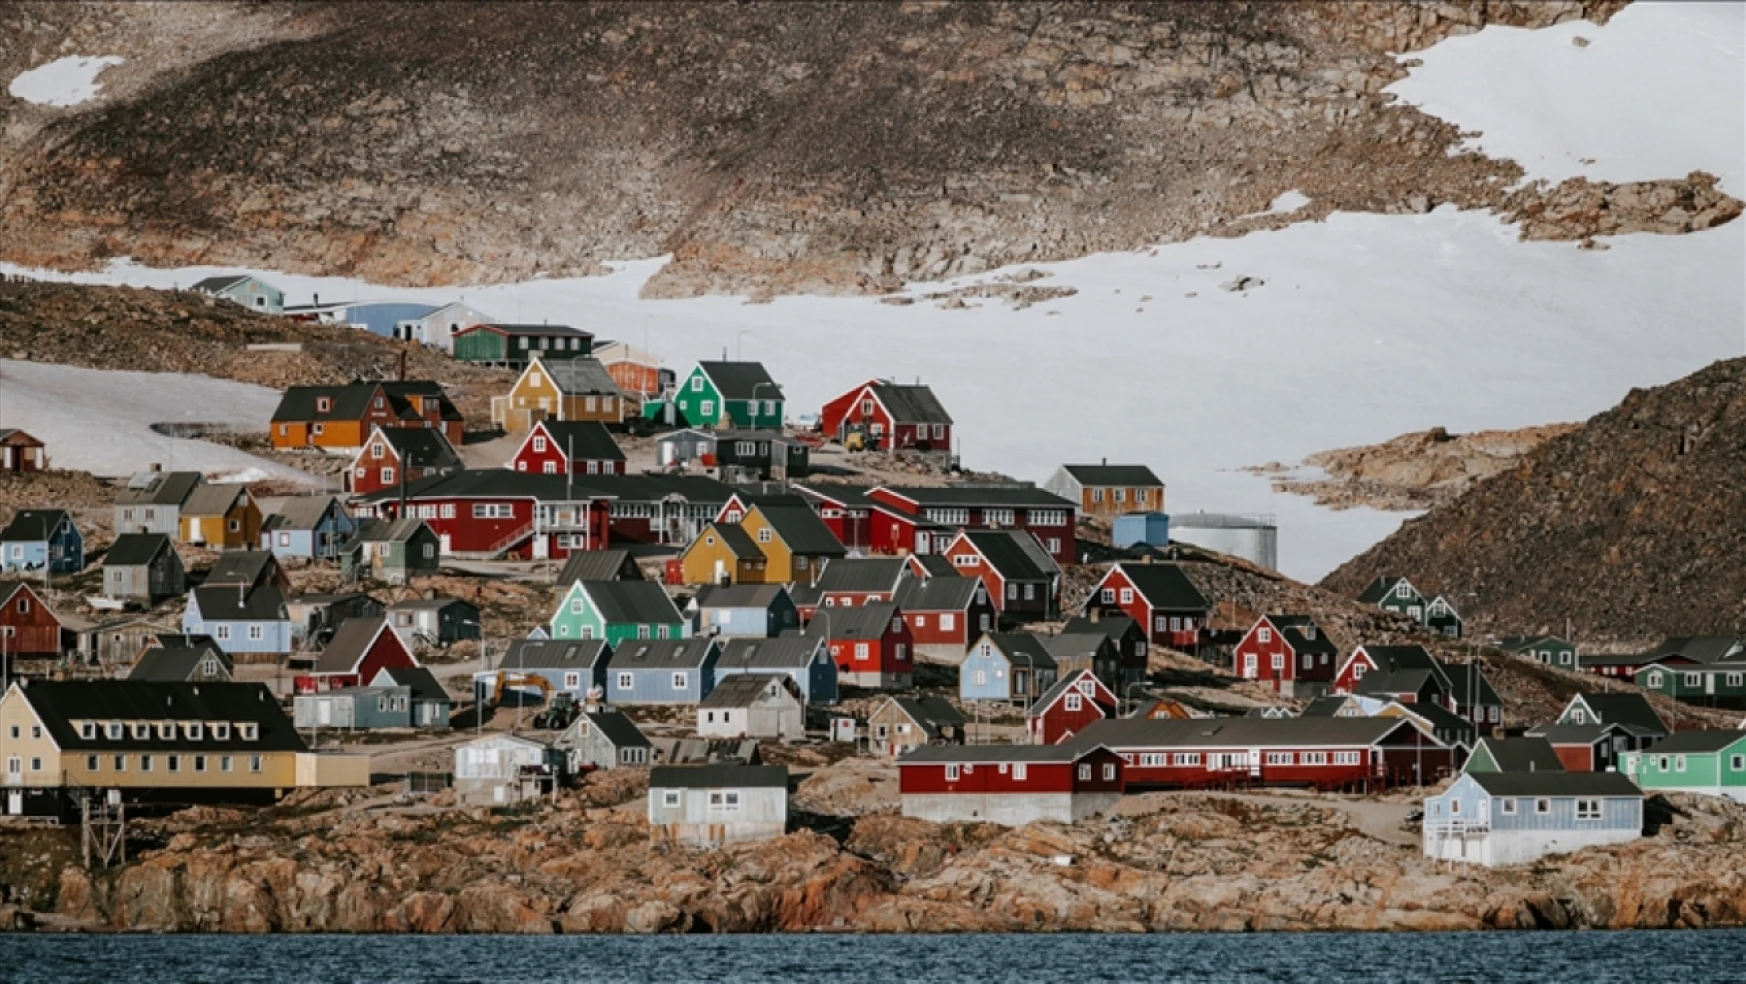 Grönland son 1000 yılın sıcaklıklarını yaşıyor